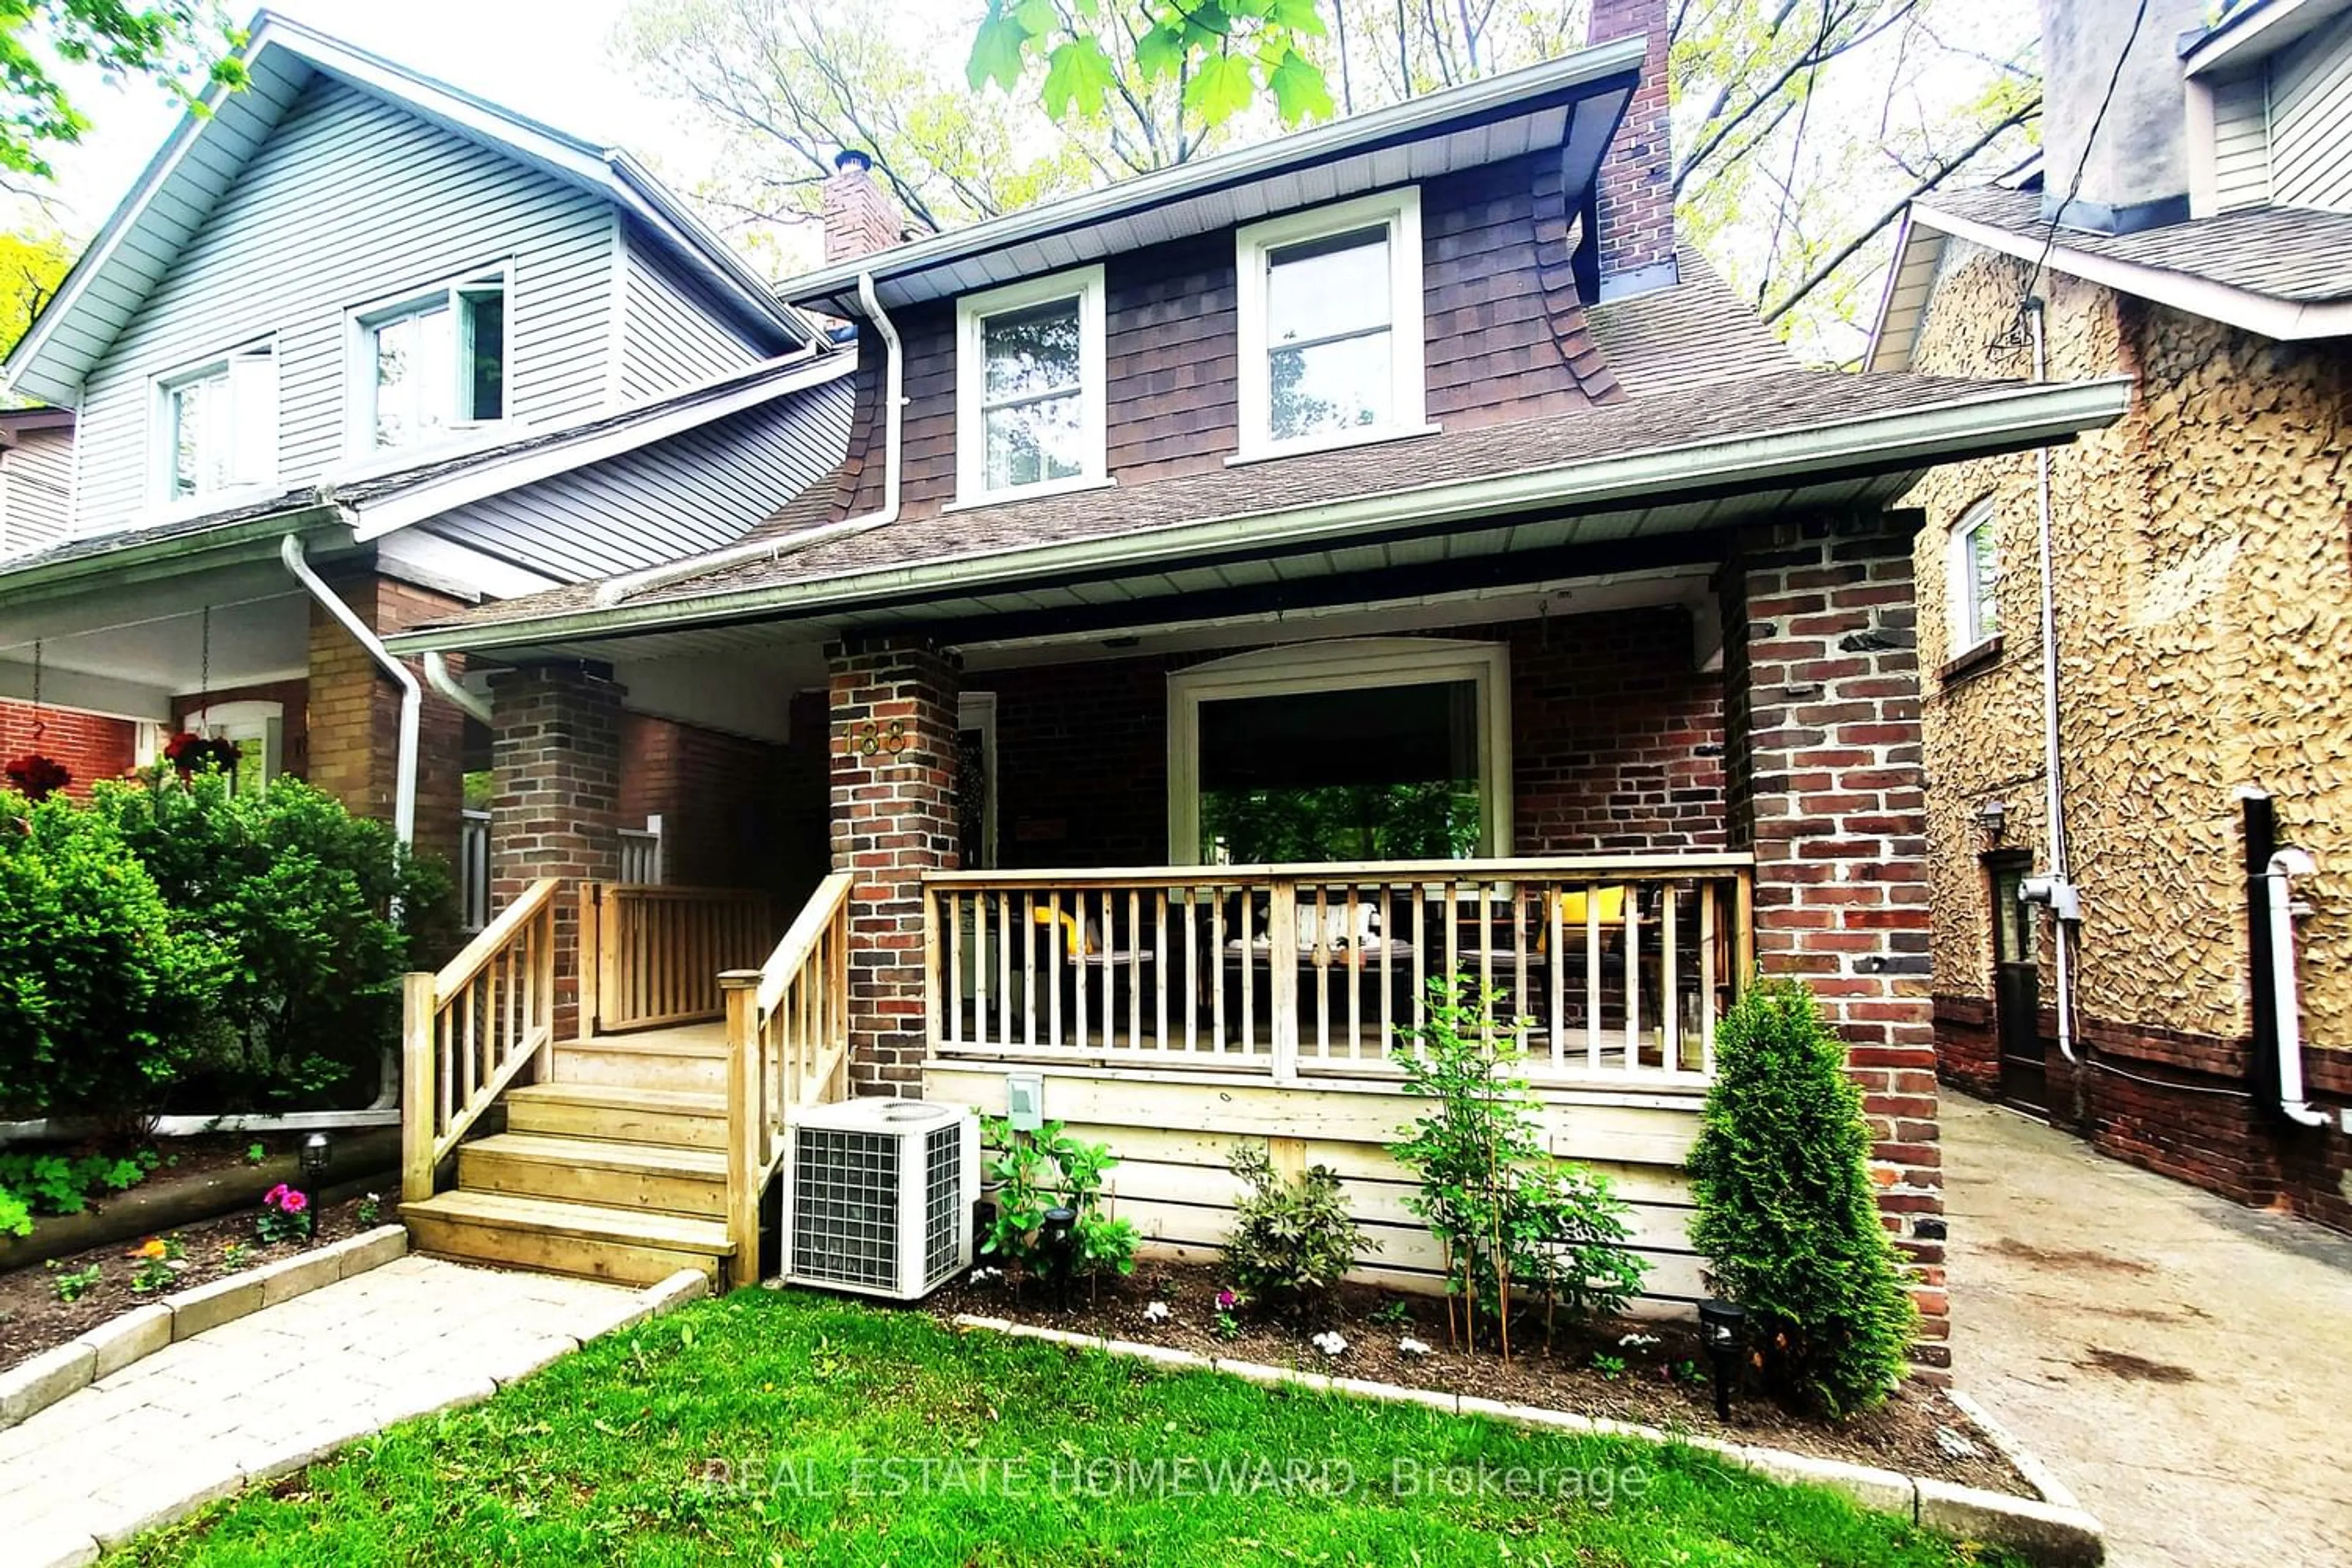 Home with brick exterior material for 188 Bingham Ave, Toronto Ontario M4E 3R5